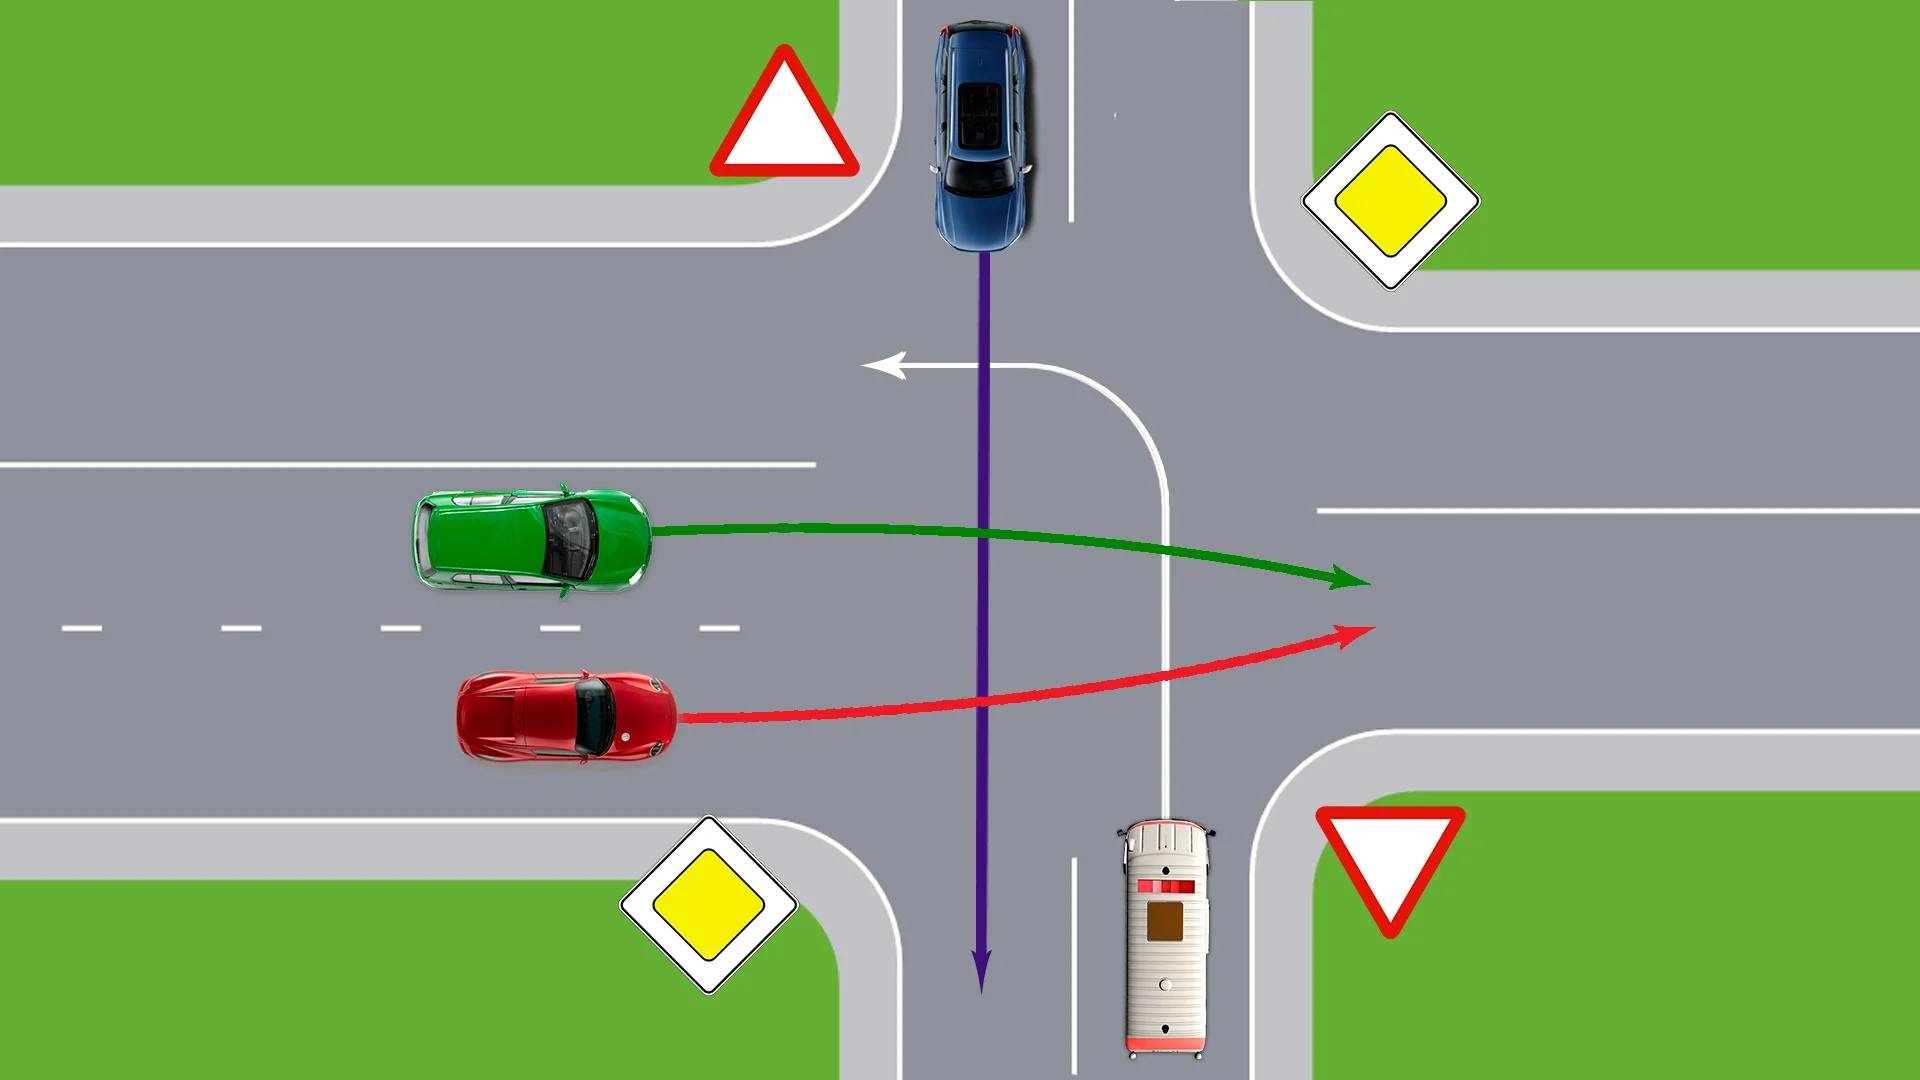 Правила проезда перекрестков в картинках 2019 года: регулируемый, нерегулируемый, крогового, т-образный